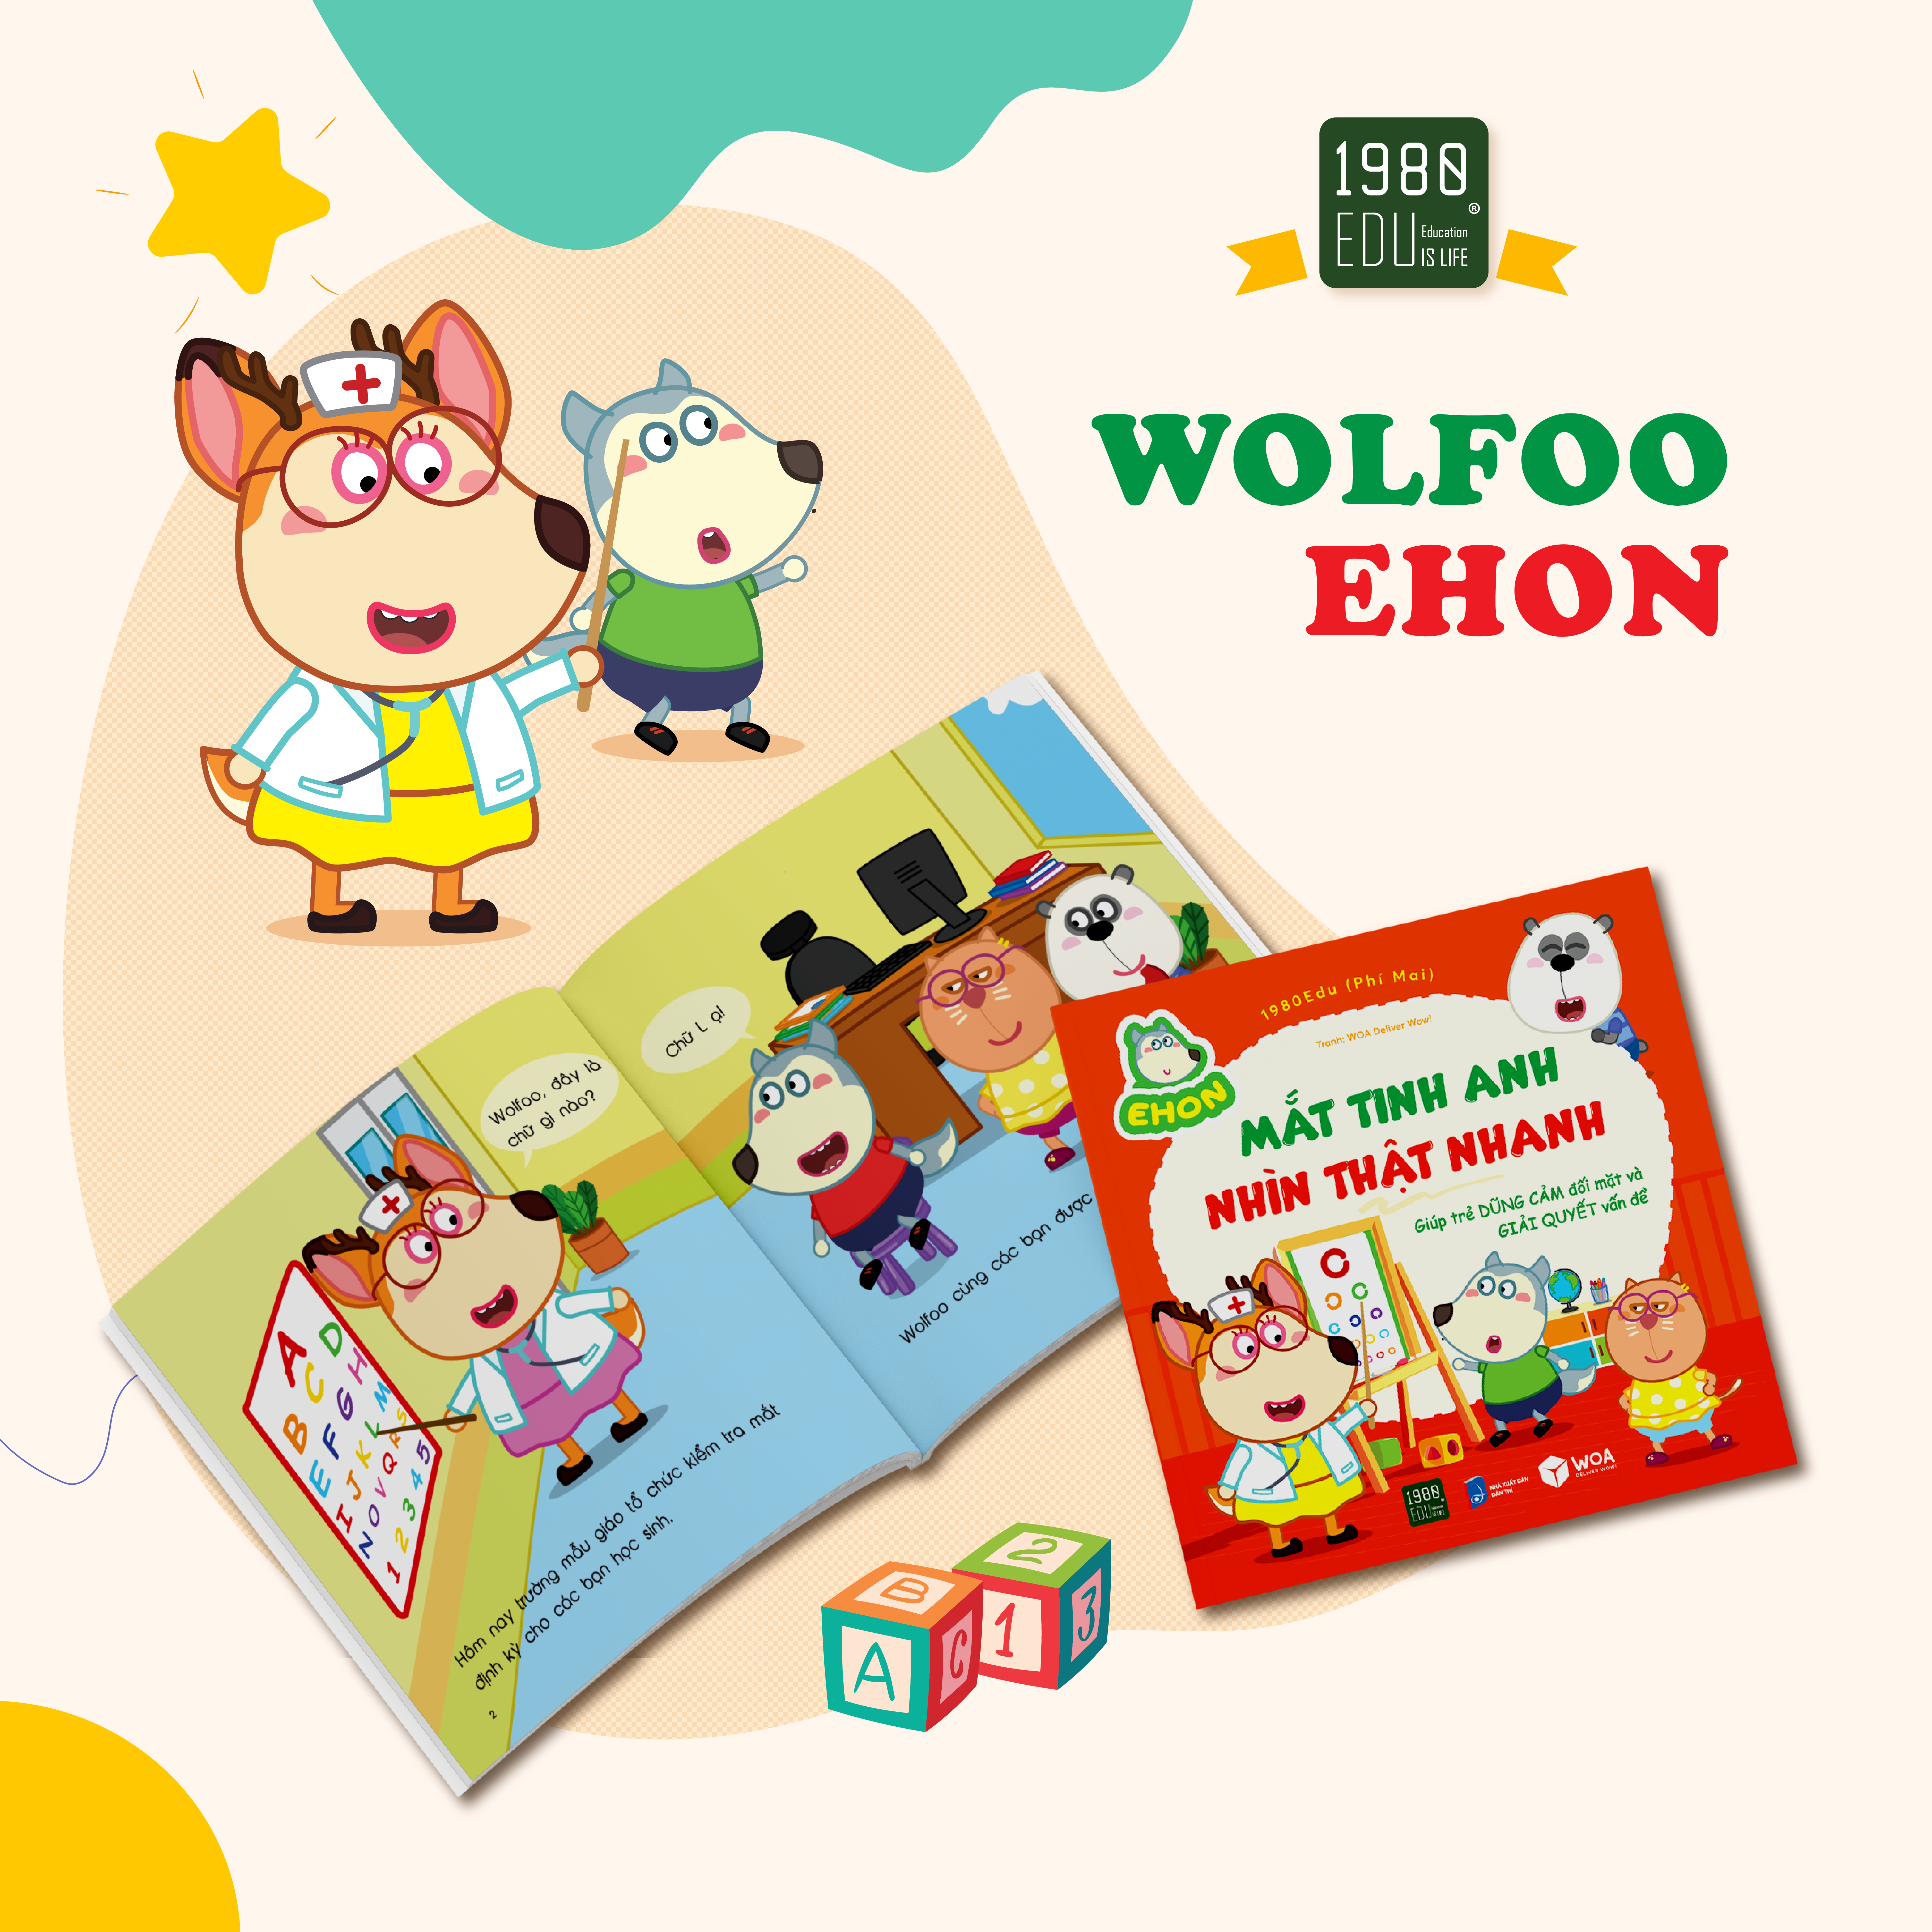 Sách Wolfoo Ehon - Mắt Tinh Anh, Nhìn Thật Nhanh